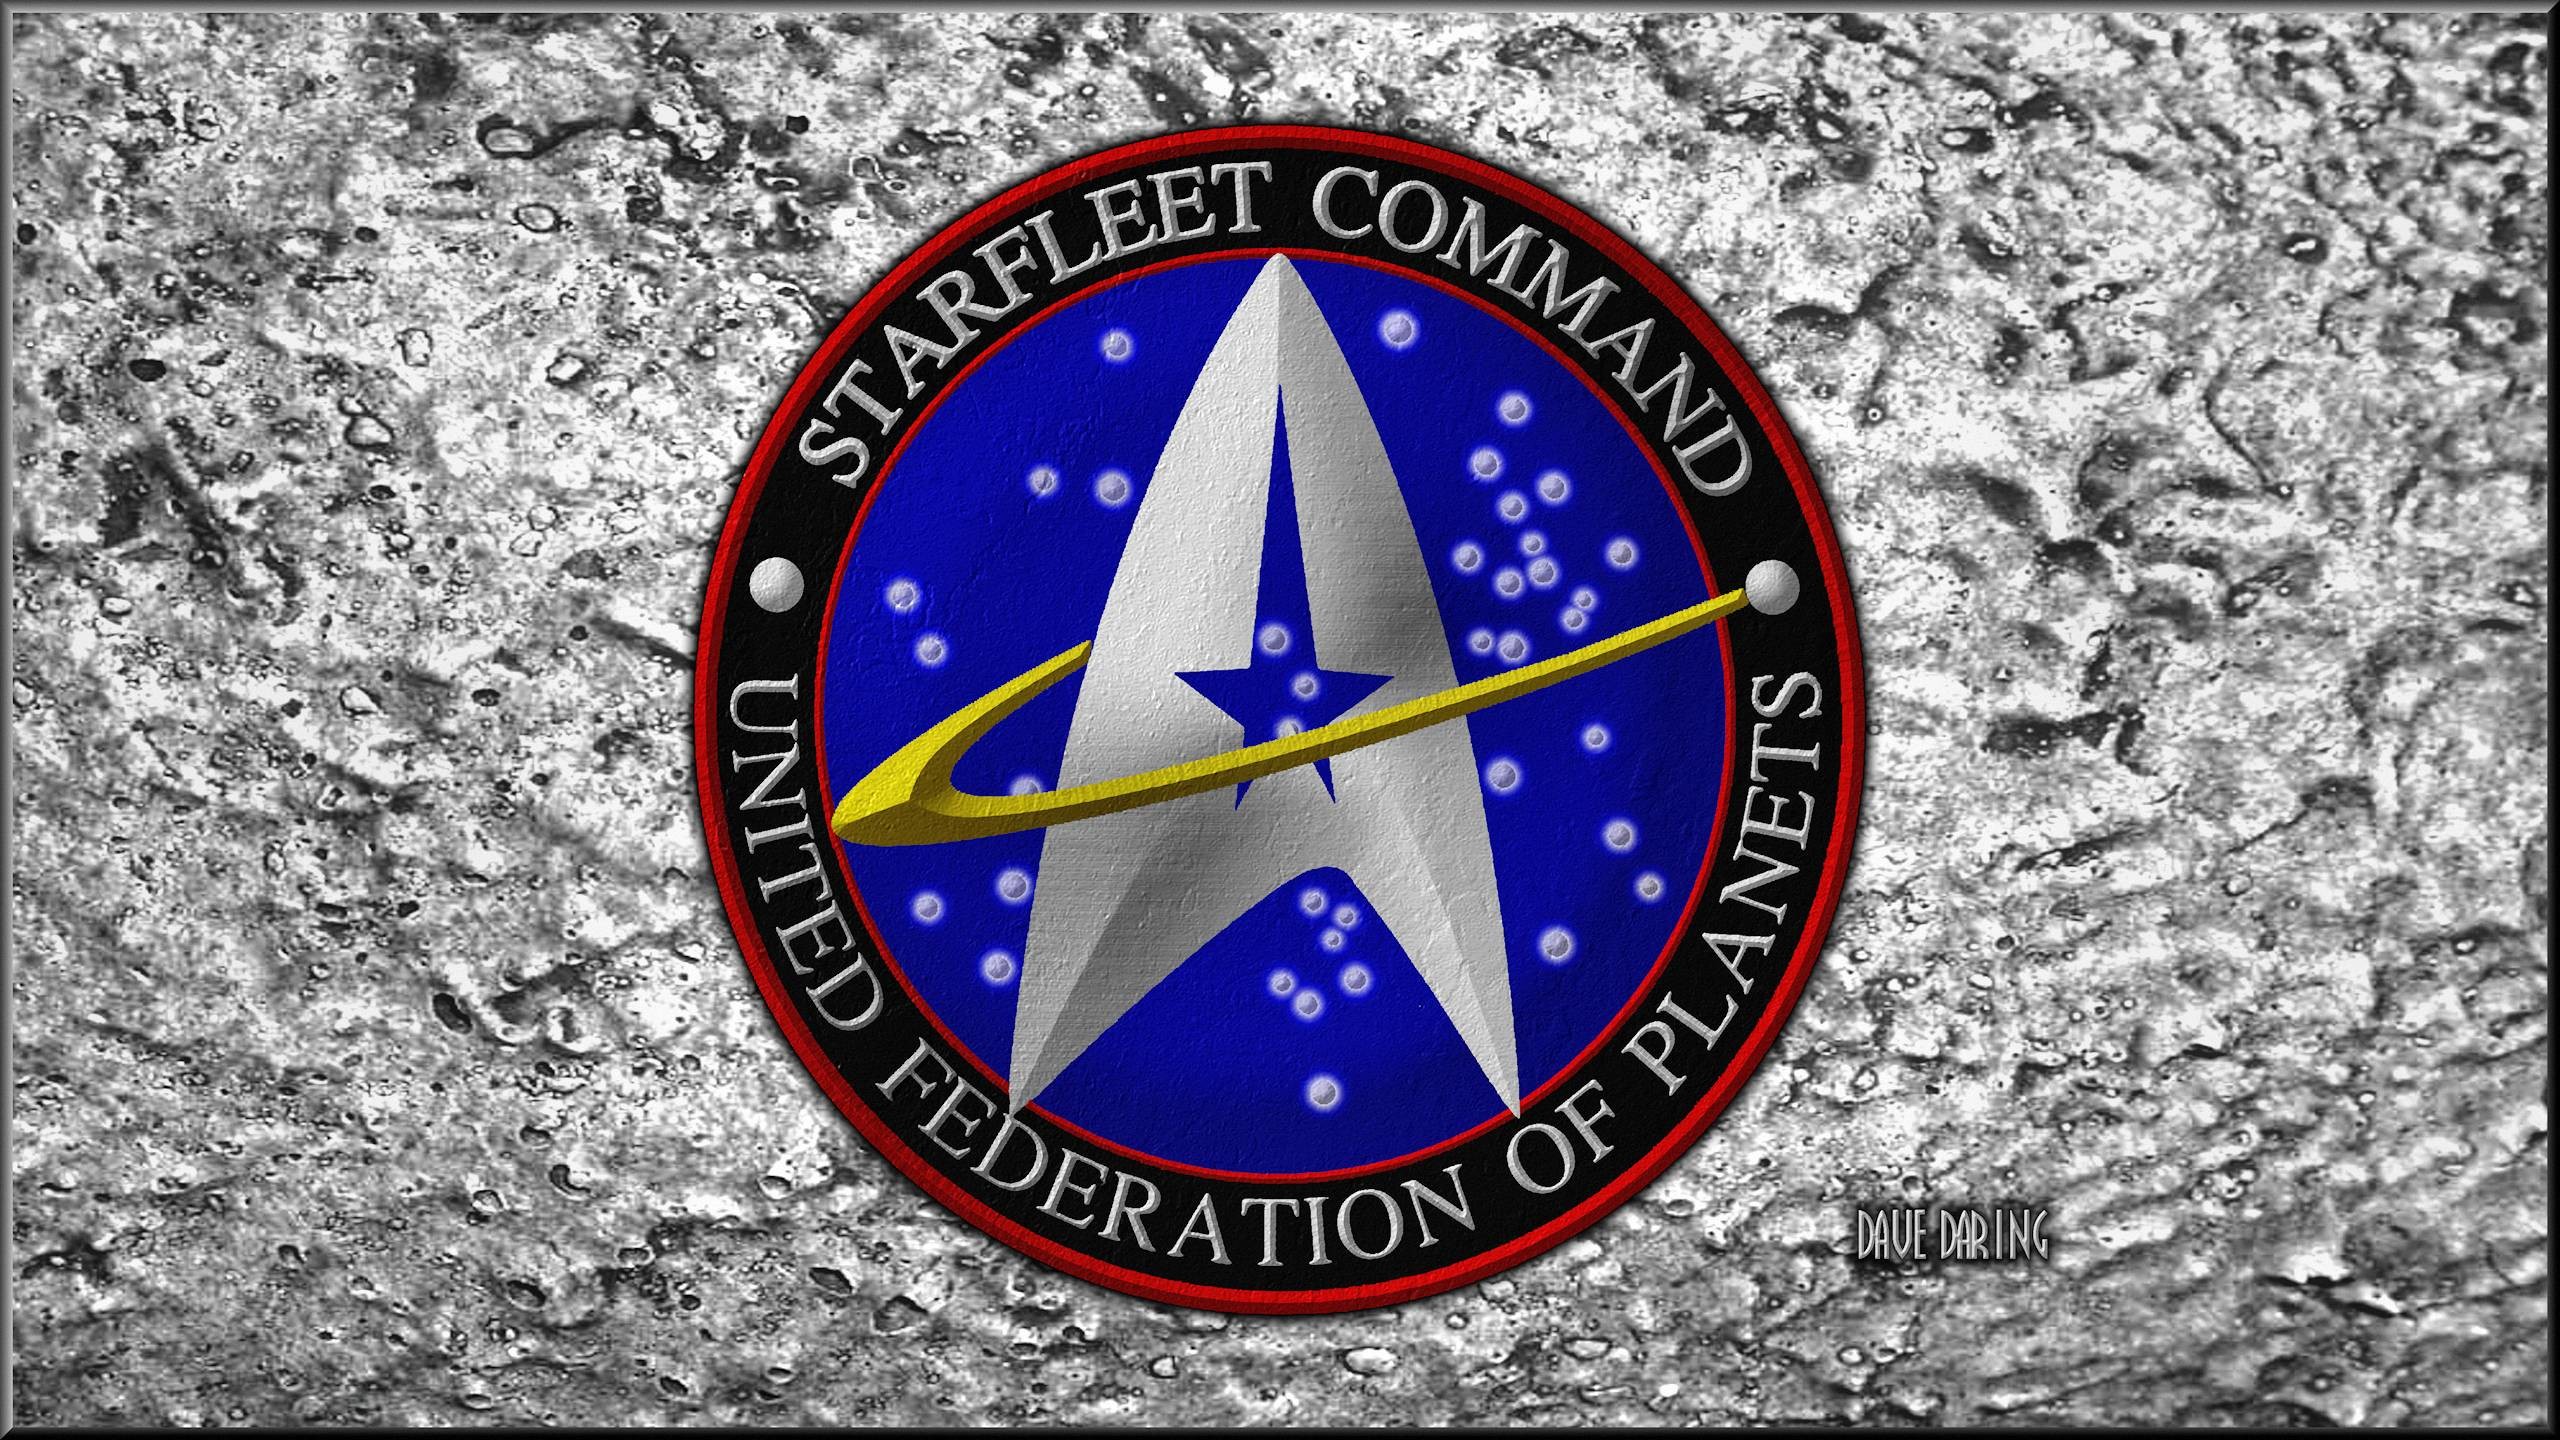 2560x1440 ... Star Trek Star Fleet Command Crest by Dave-Daring